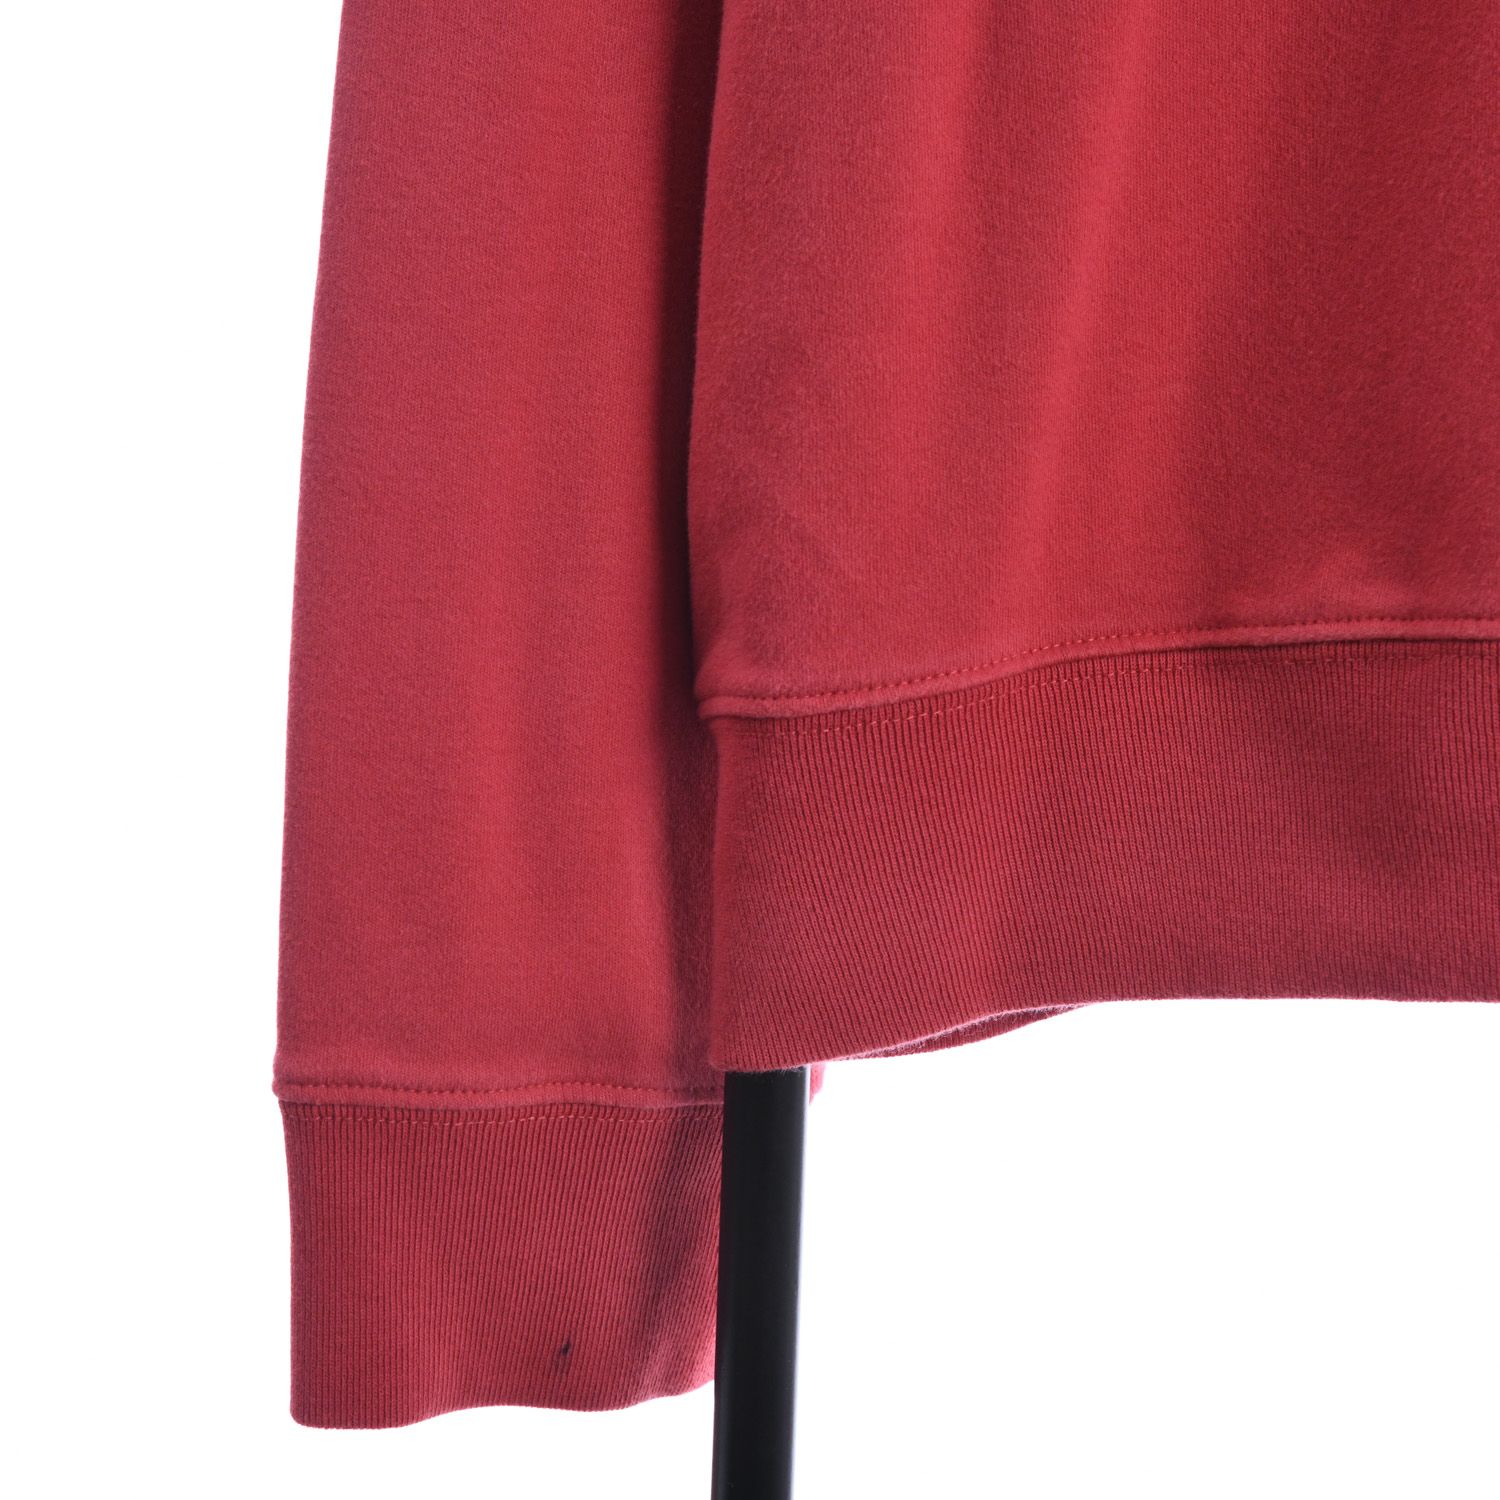 Ralph Lauren Quarter-Zip Red Sweatshirt